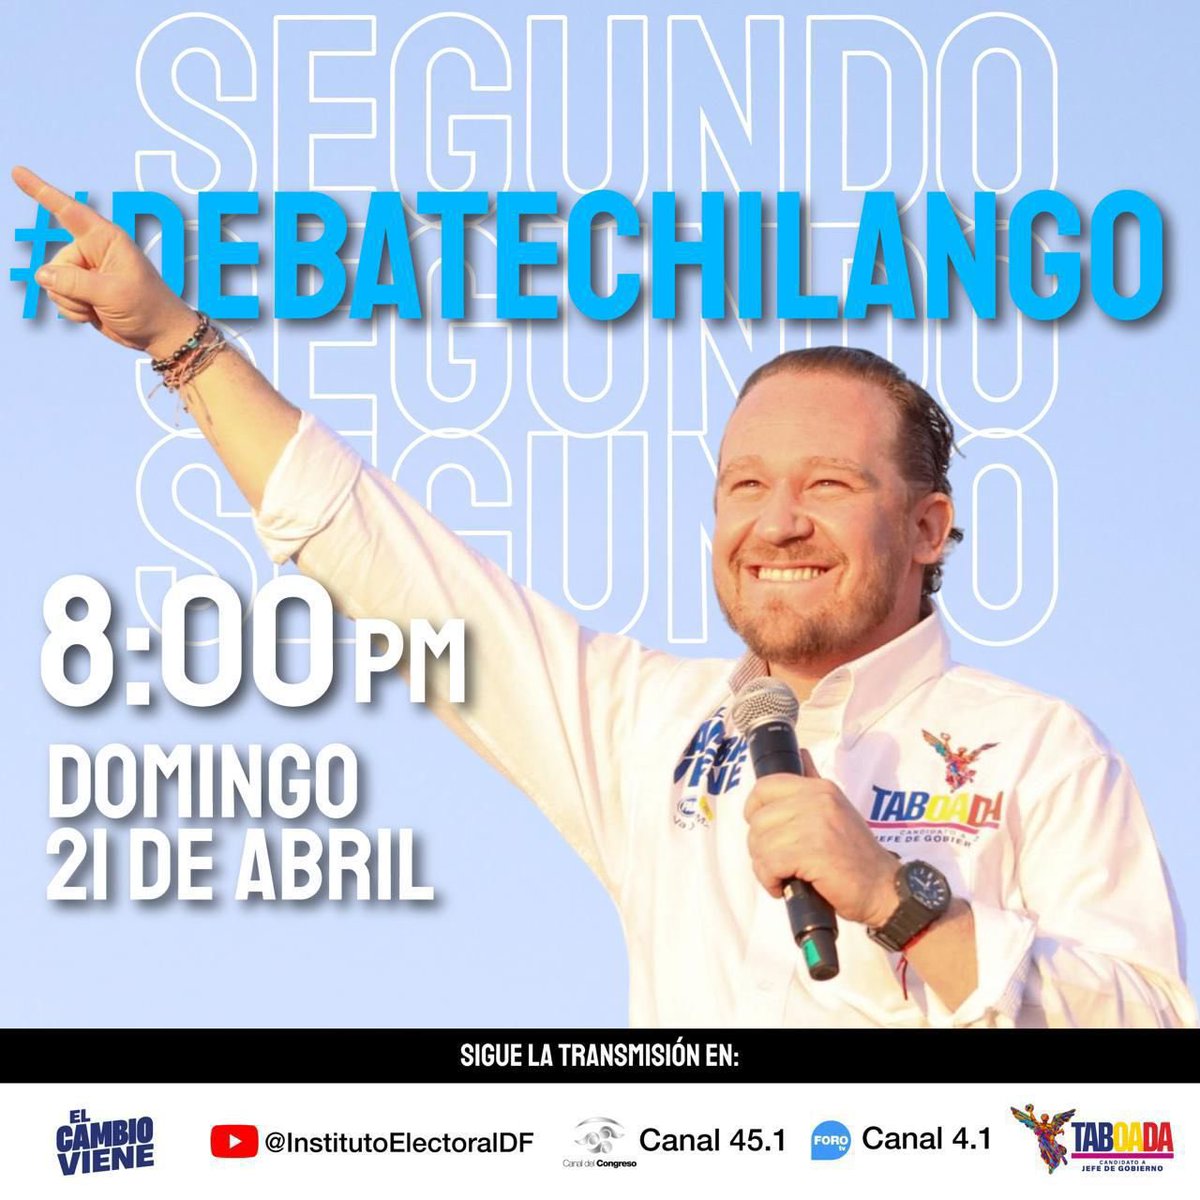 Mañana es el 2do. #DebateChilango. 🗓️21 de abril 🕗20:00 horas #TaboadaJefeDeGobierno #TaboadaGobernadorCDMX #Vota2deJunio #VotoChilango @STaboadaMx @FCN_mx @redesunidosmx @SocCivilMx Sigue la transmisión por 👉youtube.com/watch?v=1Hmo22…